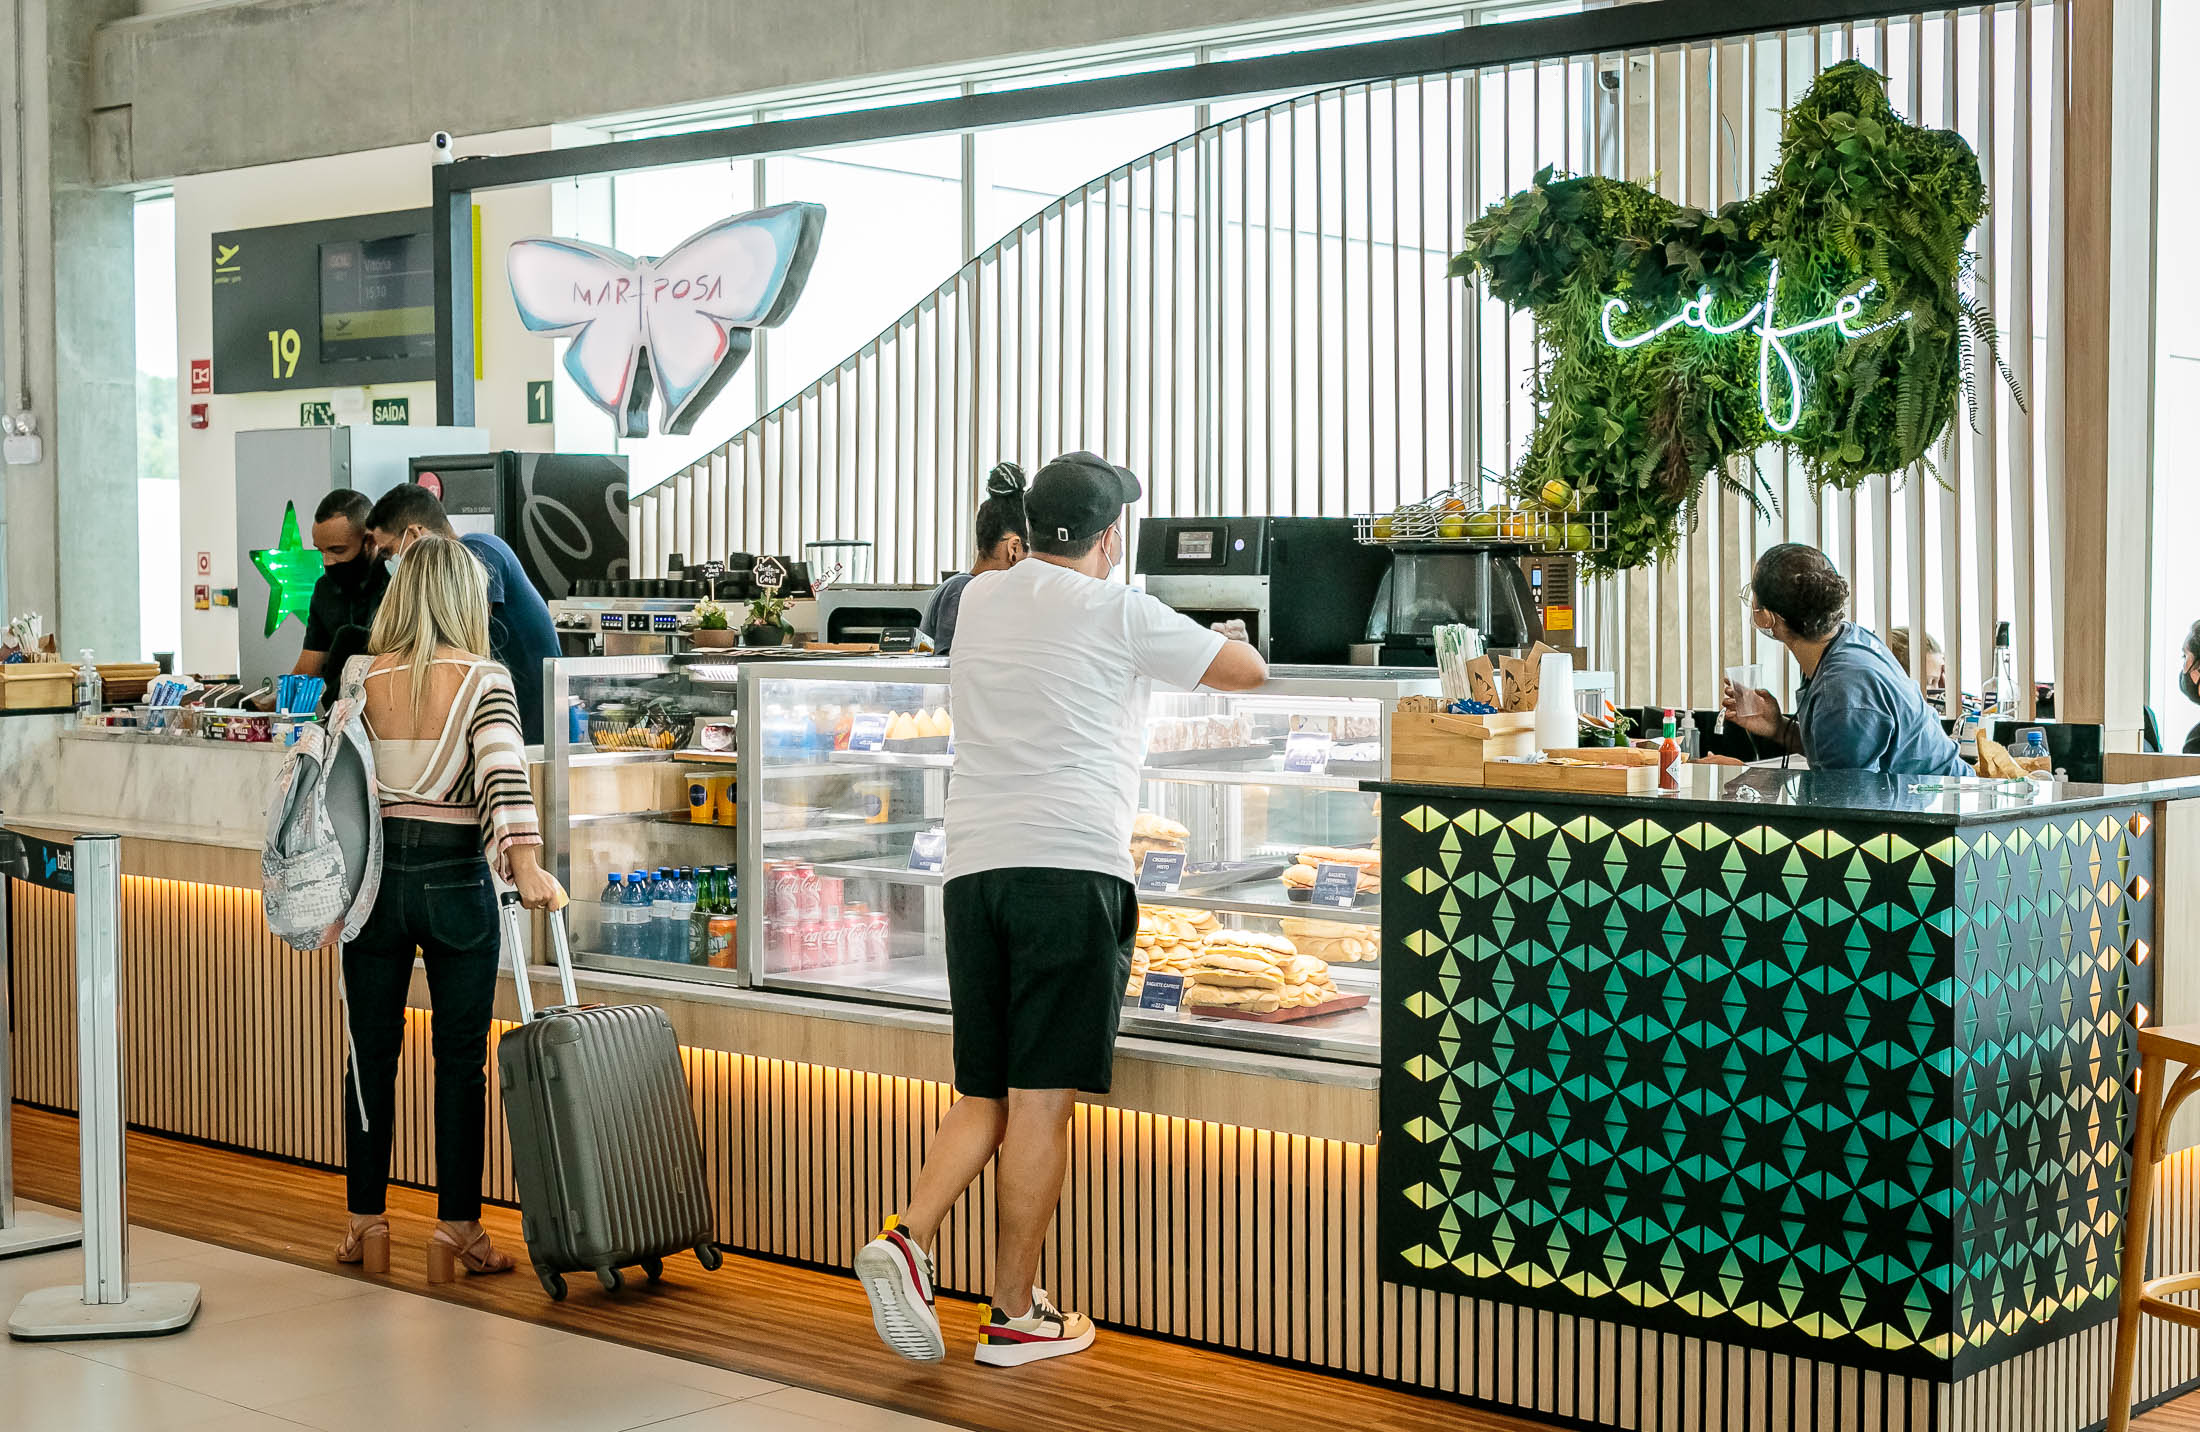 Aeroporto de Salvador terá novos restaurantes e opção de varejo